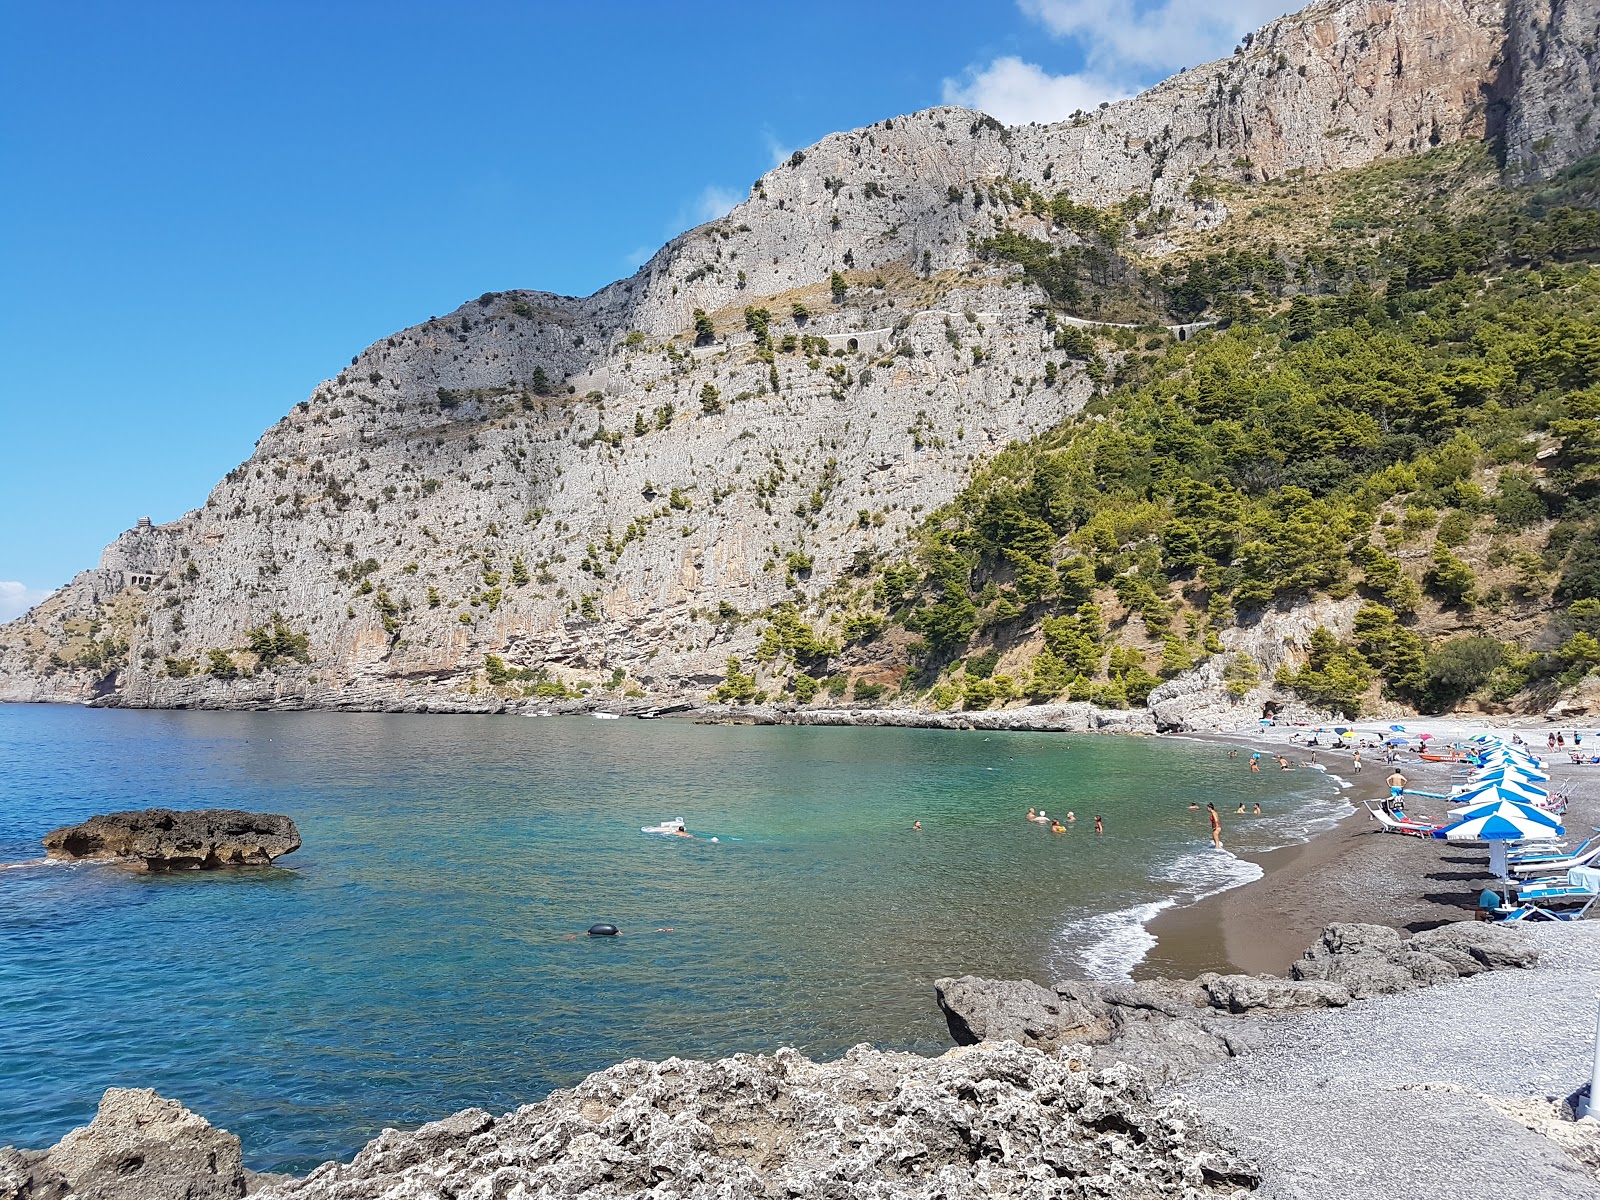 Foto von Spiaggia Acquafredda mit feiner brauner kies Oberfläche